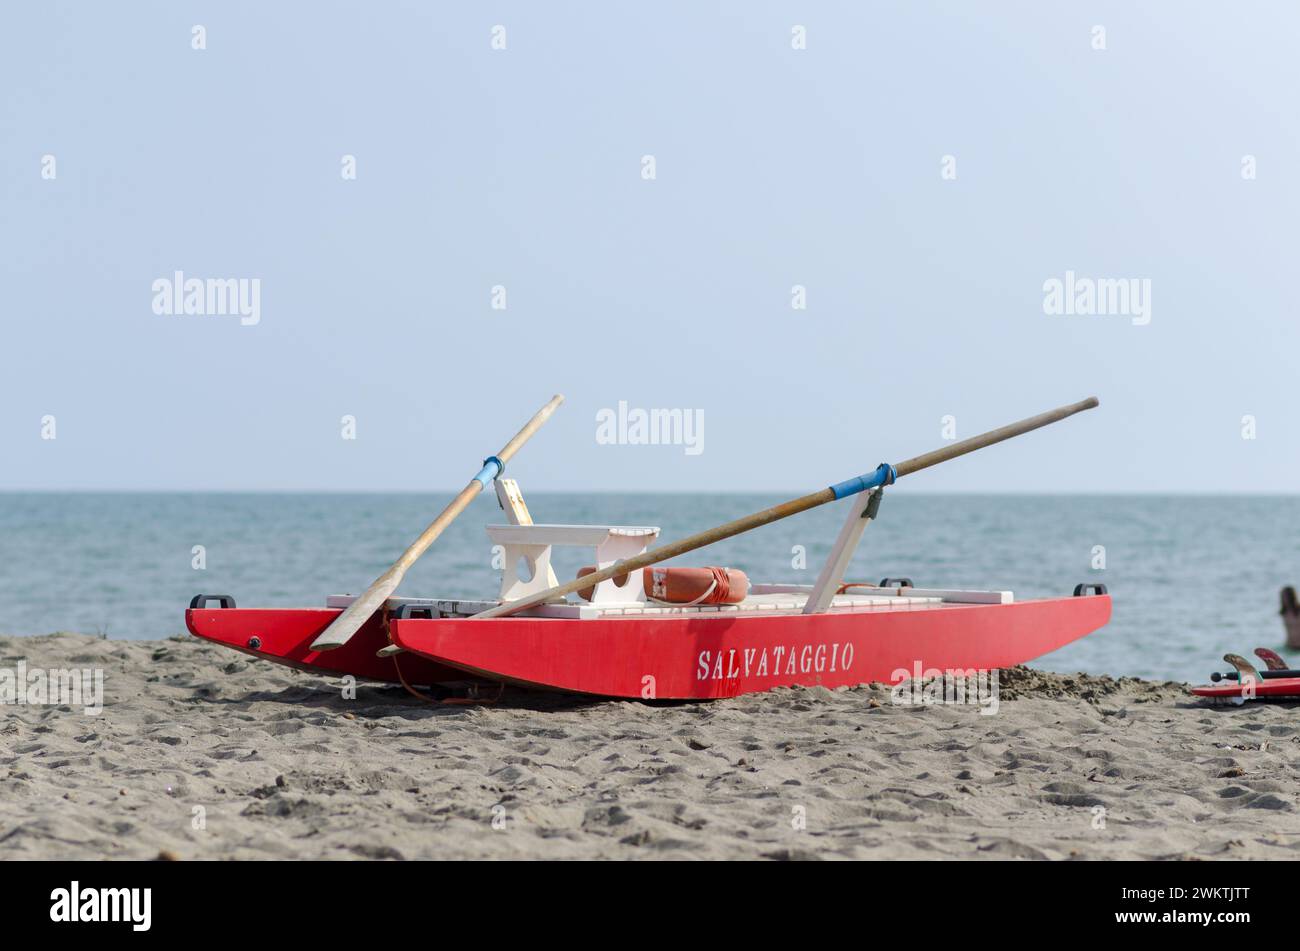 Bateau de sauveteur sur la plage pour les urgences, couleur rouge haute visibilité. Plages de mer, la sécurité côtière est constante, le risque d'accidents est élevé. actualités Banque D'Images